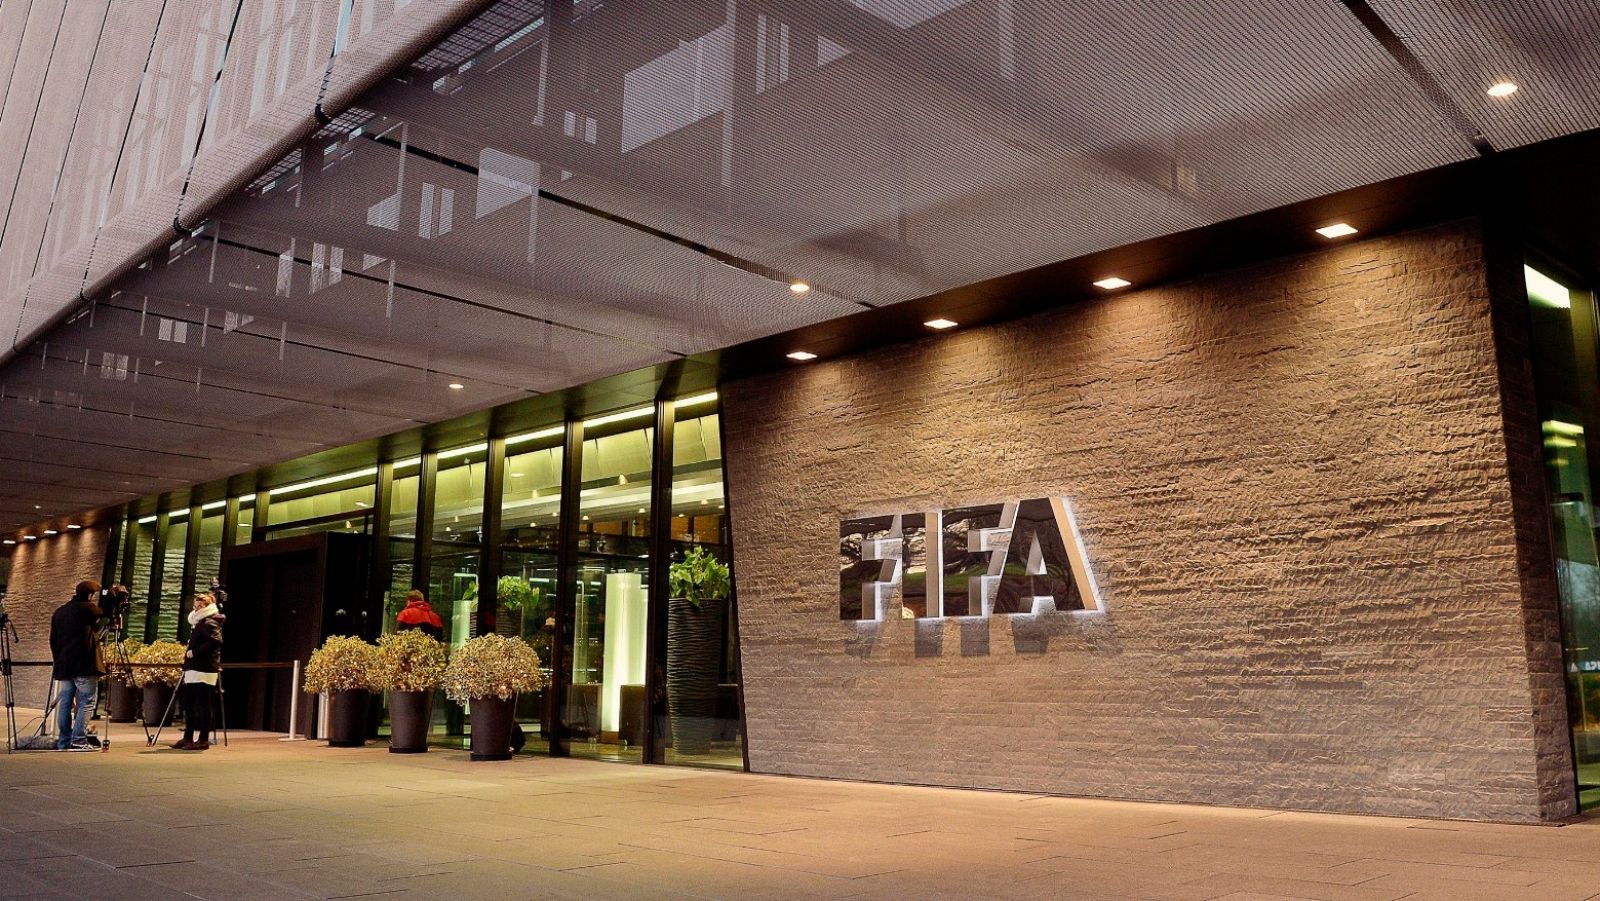 Vista del exterior de la sede de la FIFA en Zúrich, Suiza